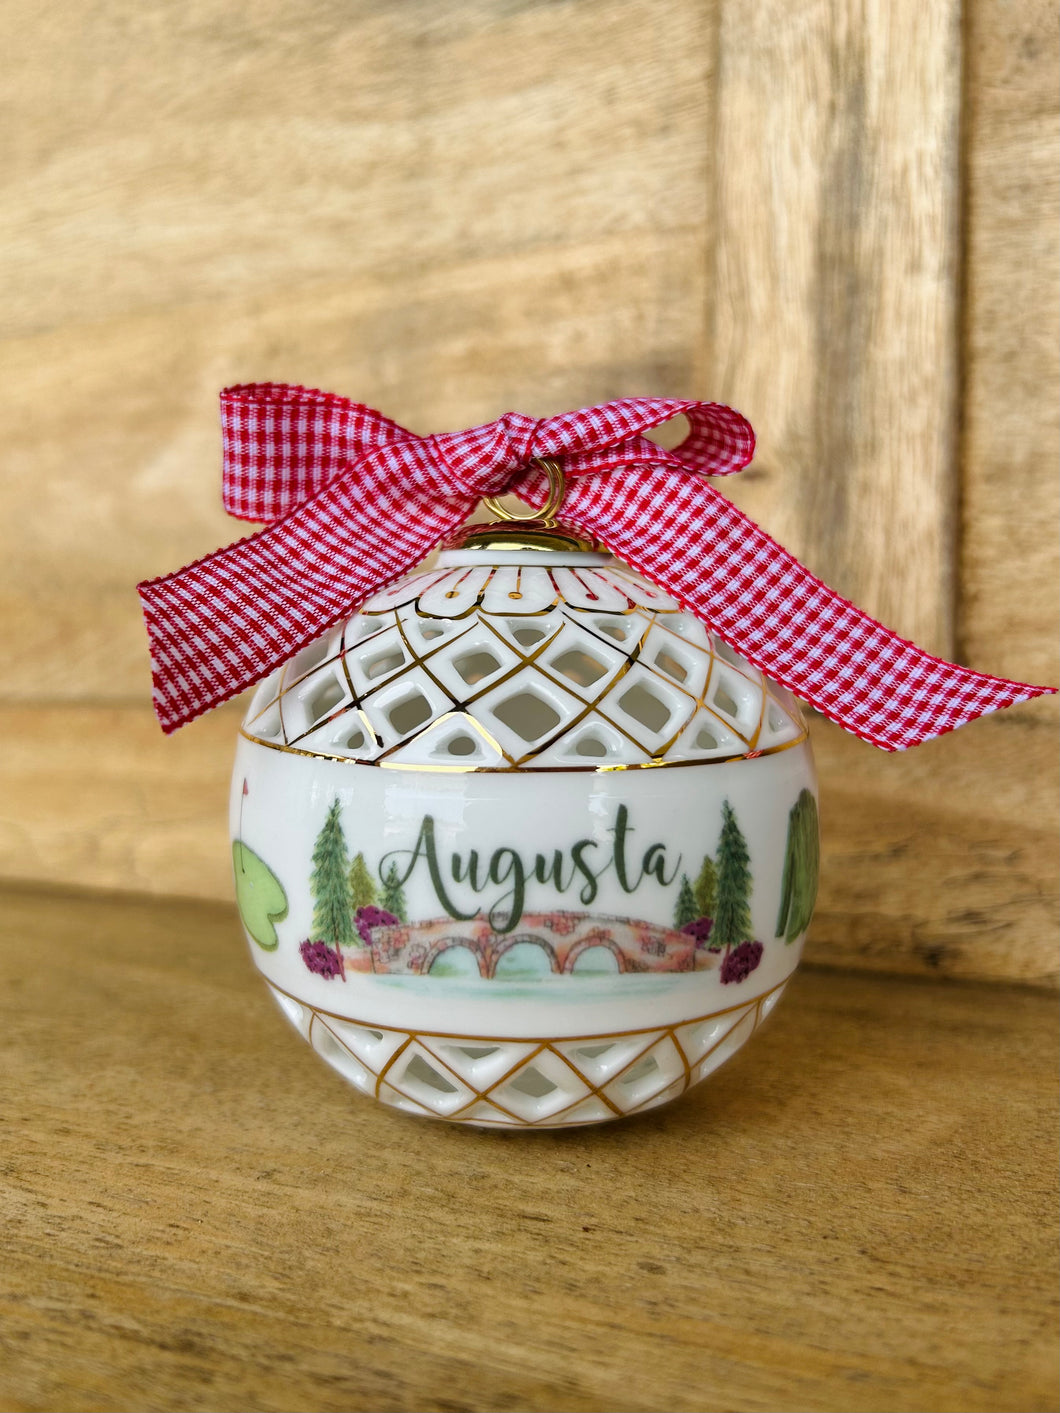 Augusta Art Sphere Ceramic Ornament